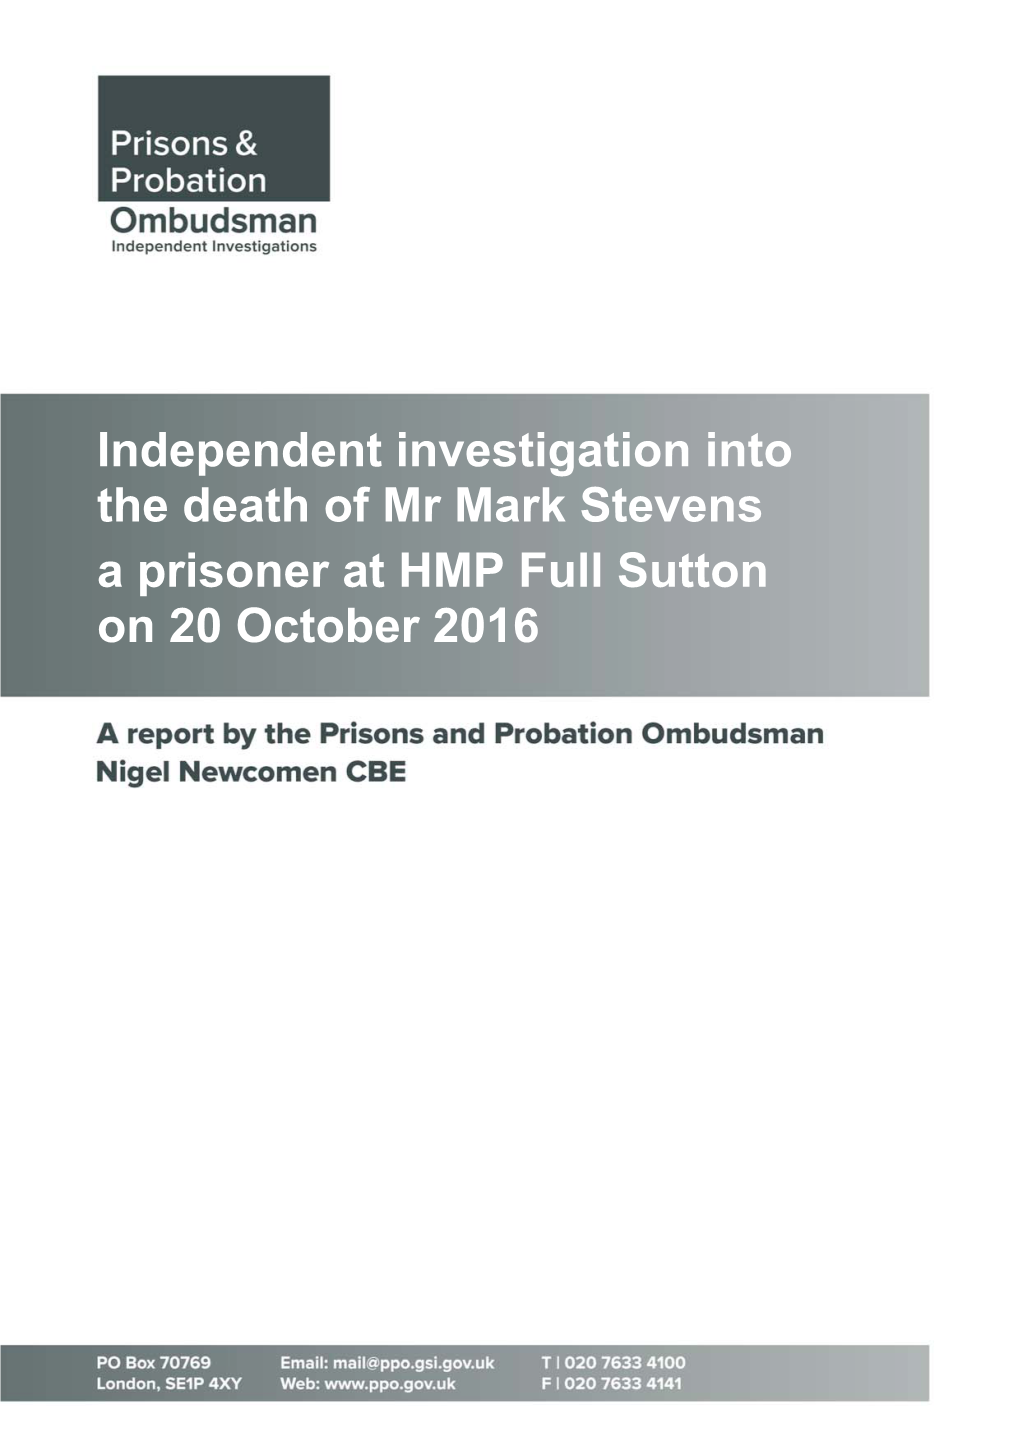 Independent Investigation Into the Death of Mr Mark Stevens a Prisoner at HMP Full Sutton on 20 October 2016